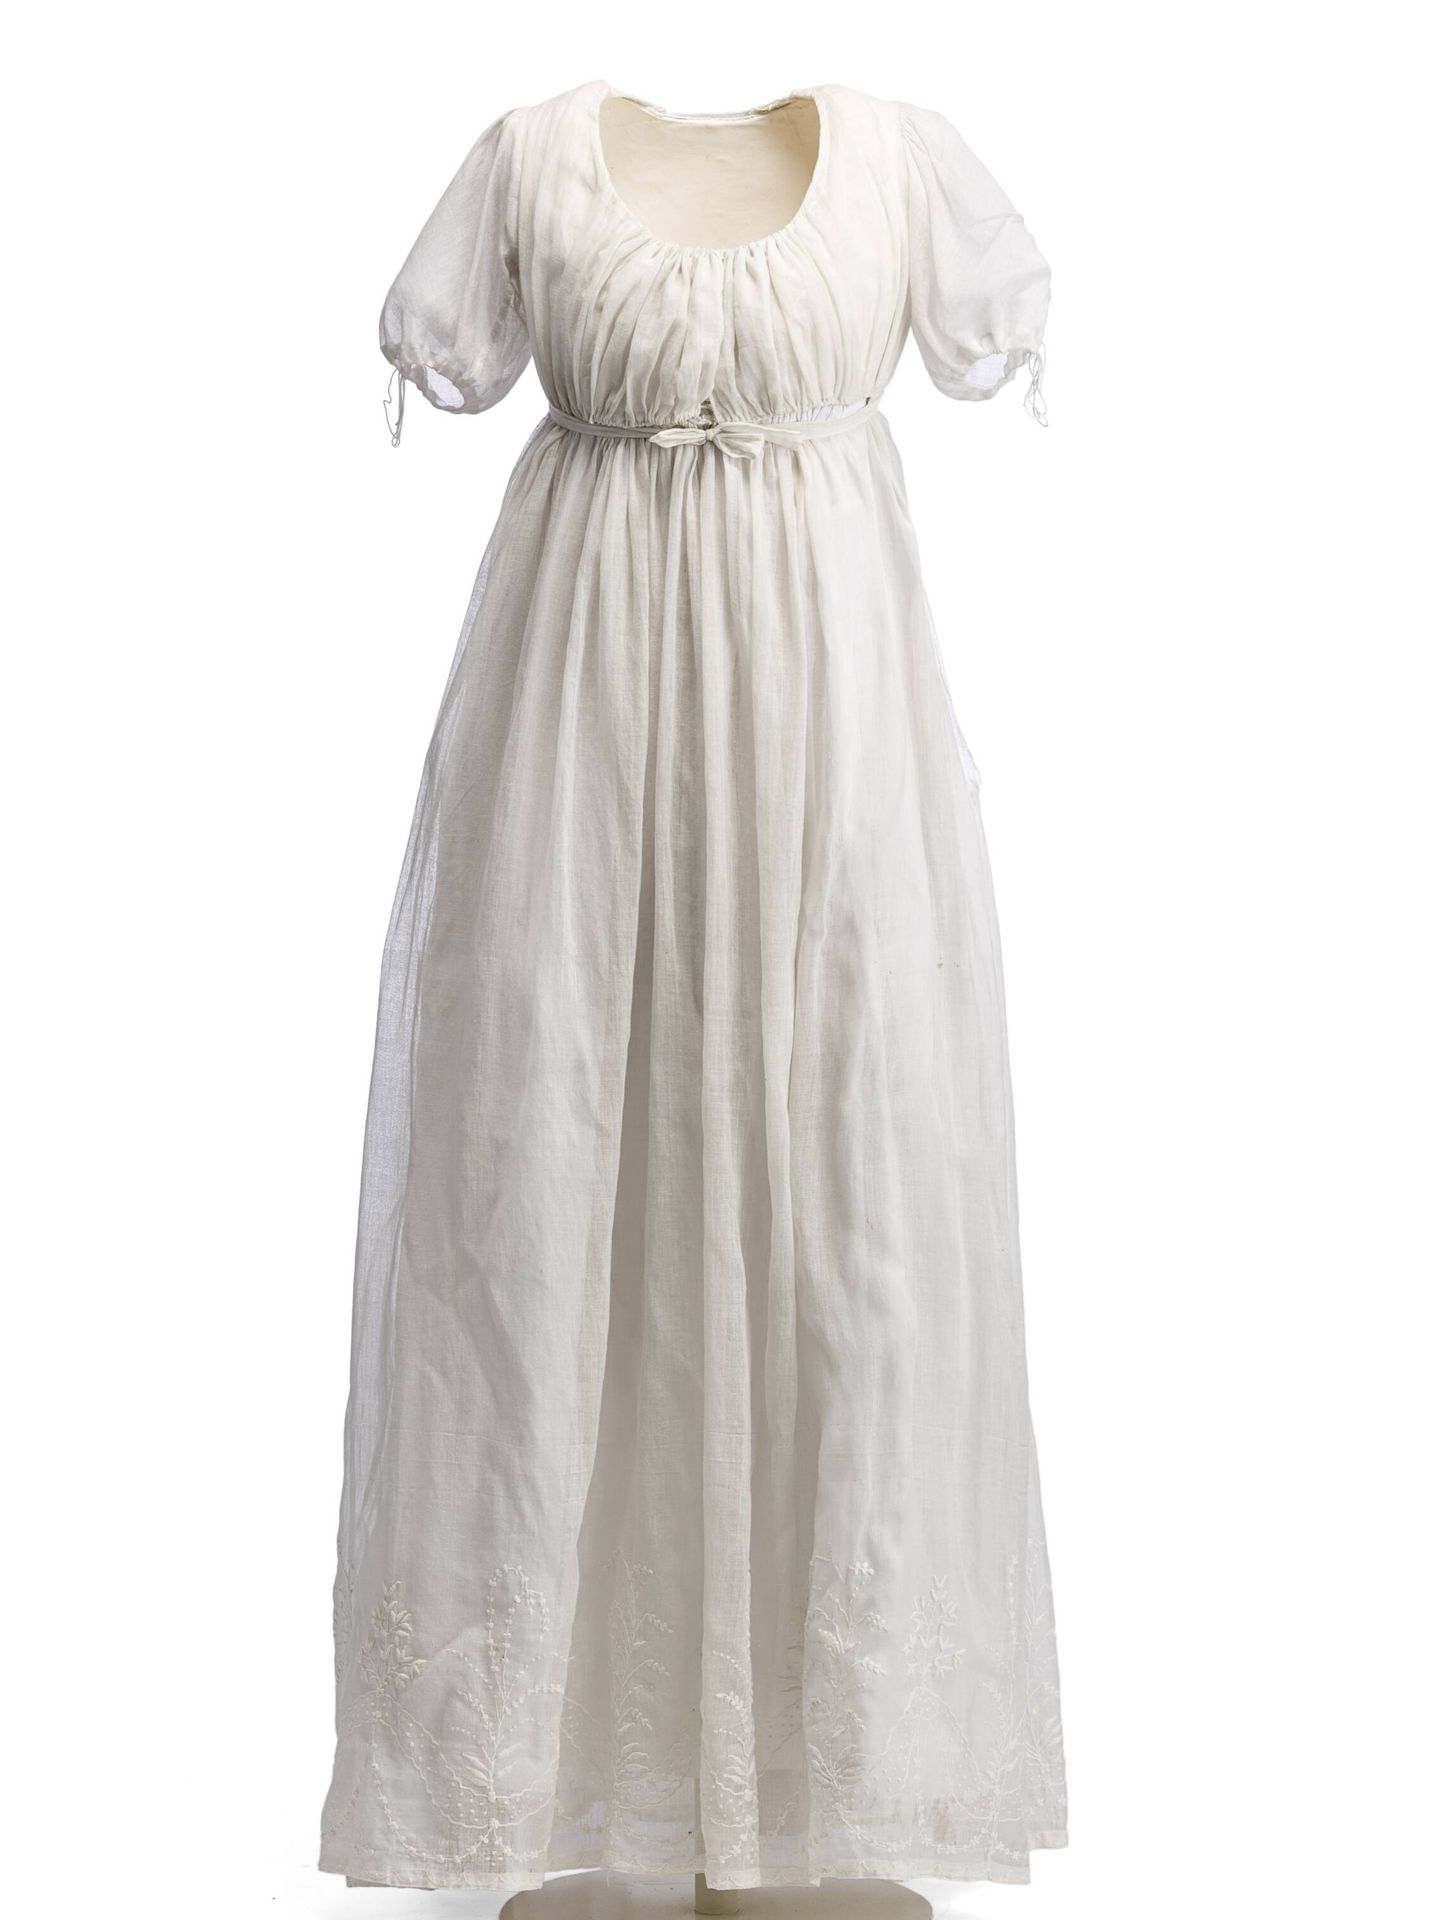 El vestido camisa que se puso de moda a finales del XVIII y principios del XIX, mucho más cómodo para las mujeres. 